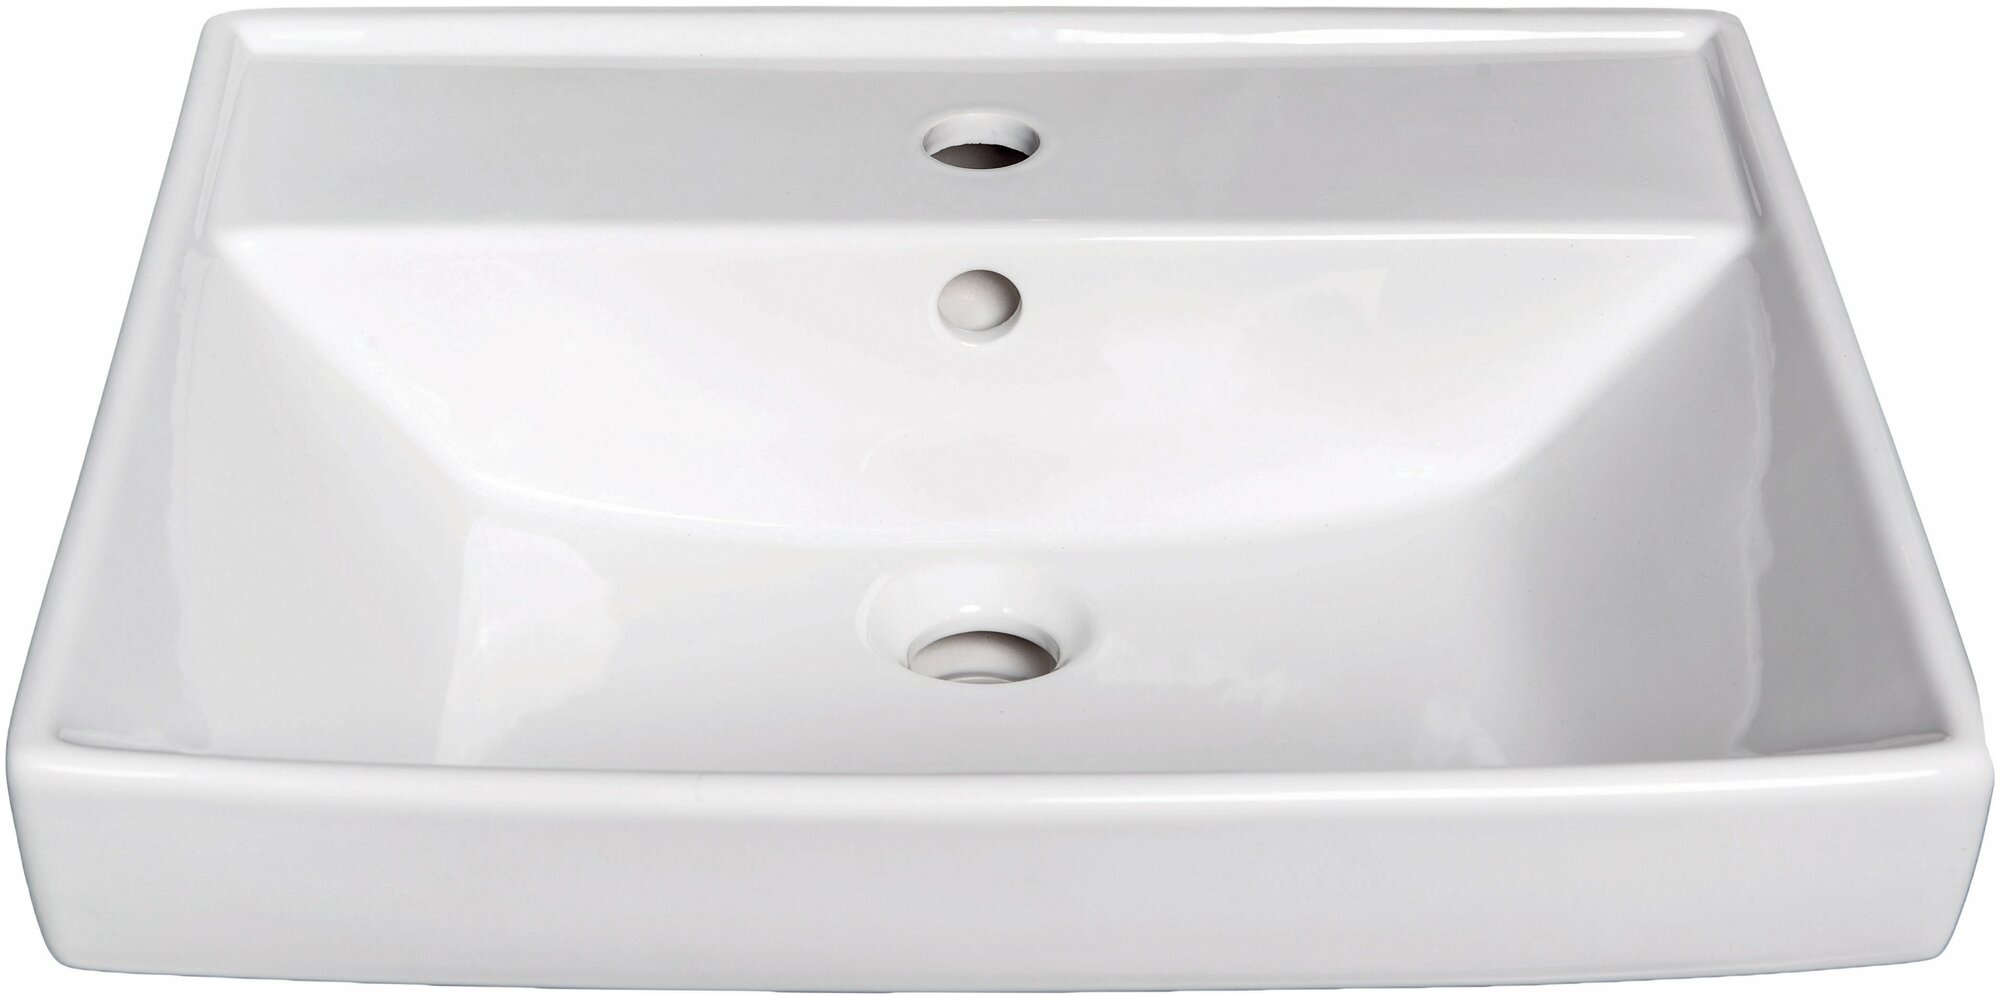 Раковина для ванной санфарфоровая с переливом универсал Енисей 50 — купить в интернет-магазине по низкой цене на Яндекс Маркете